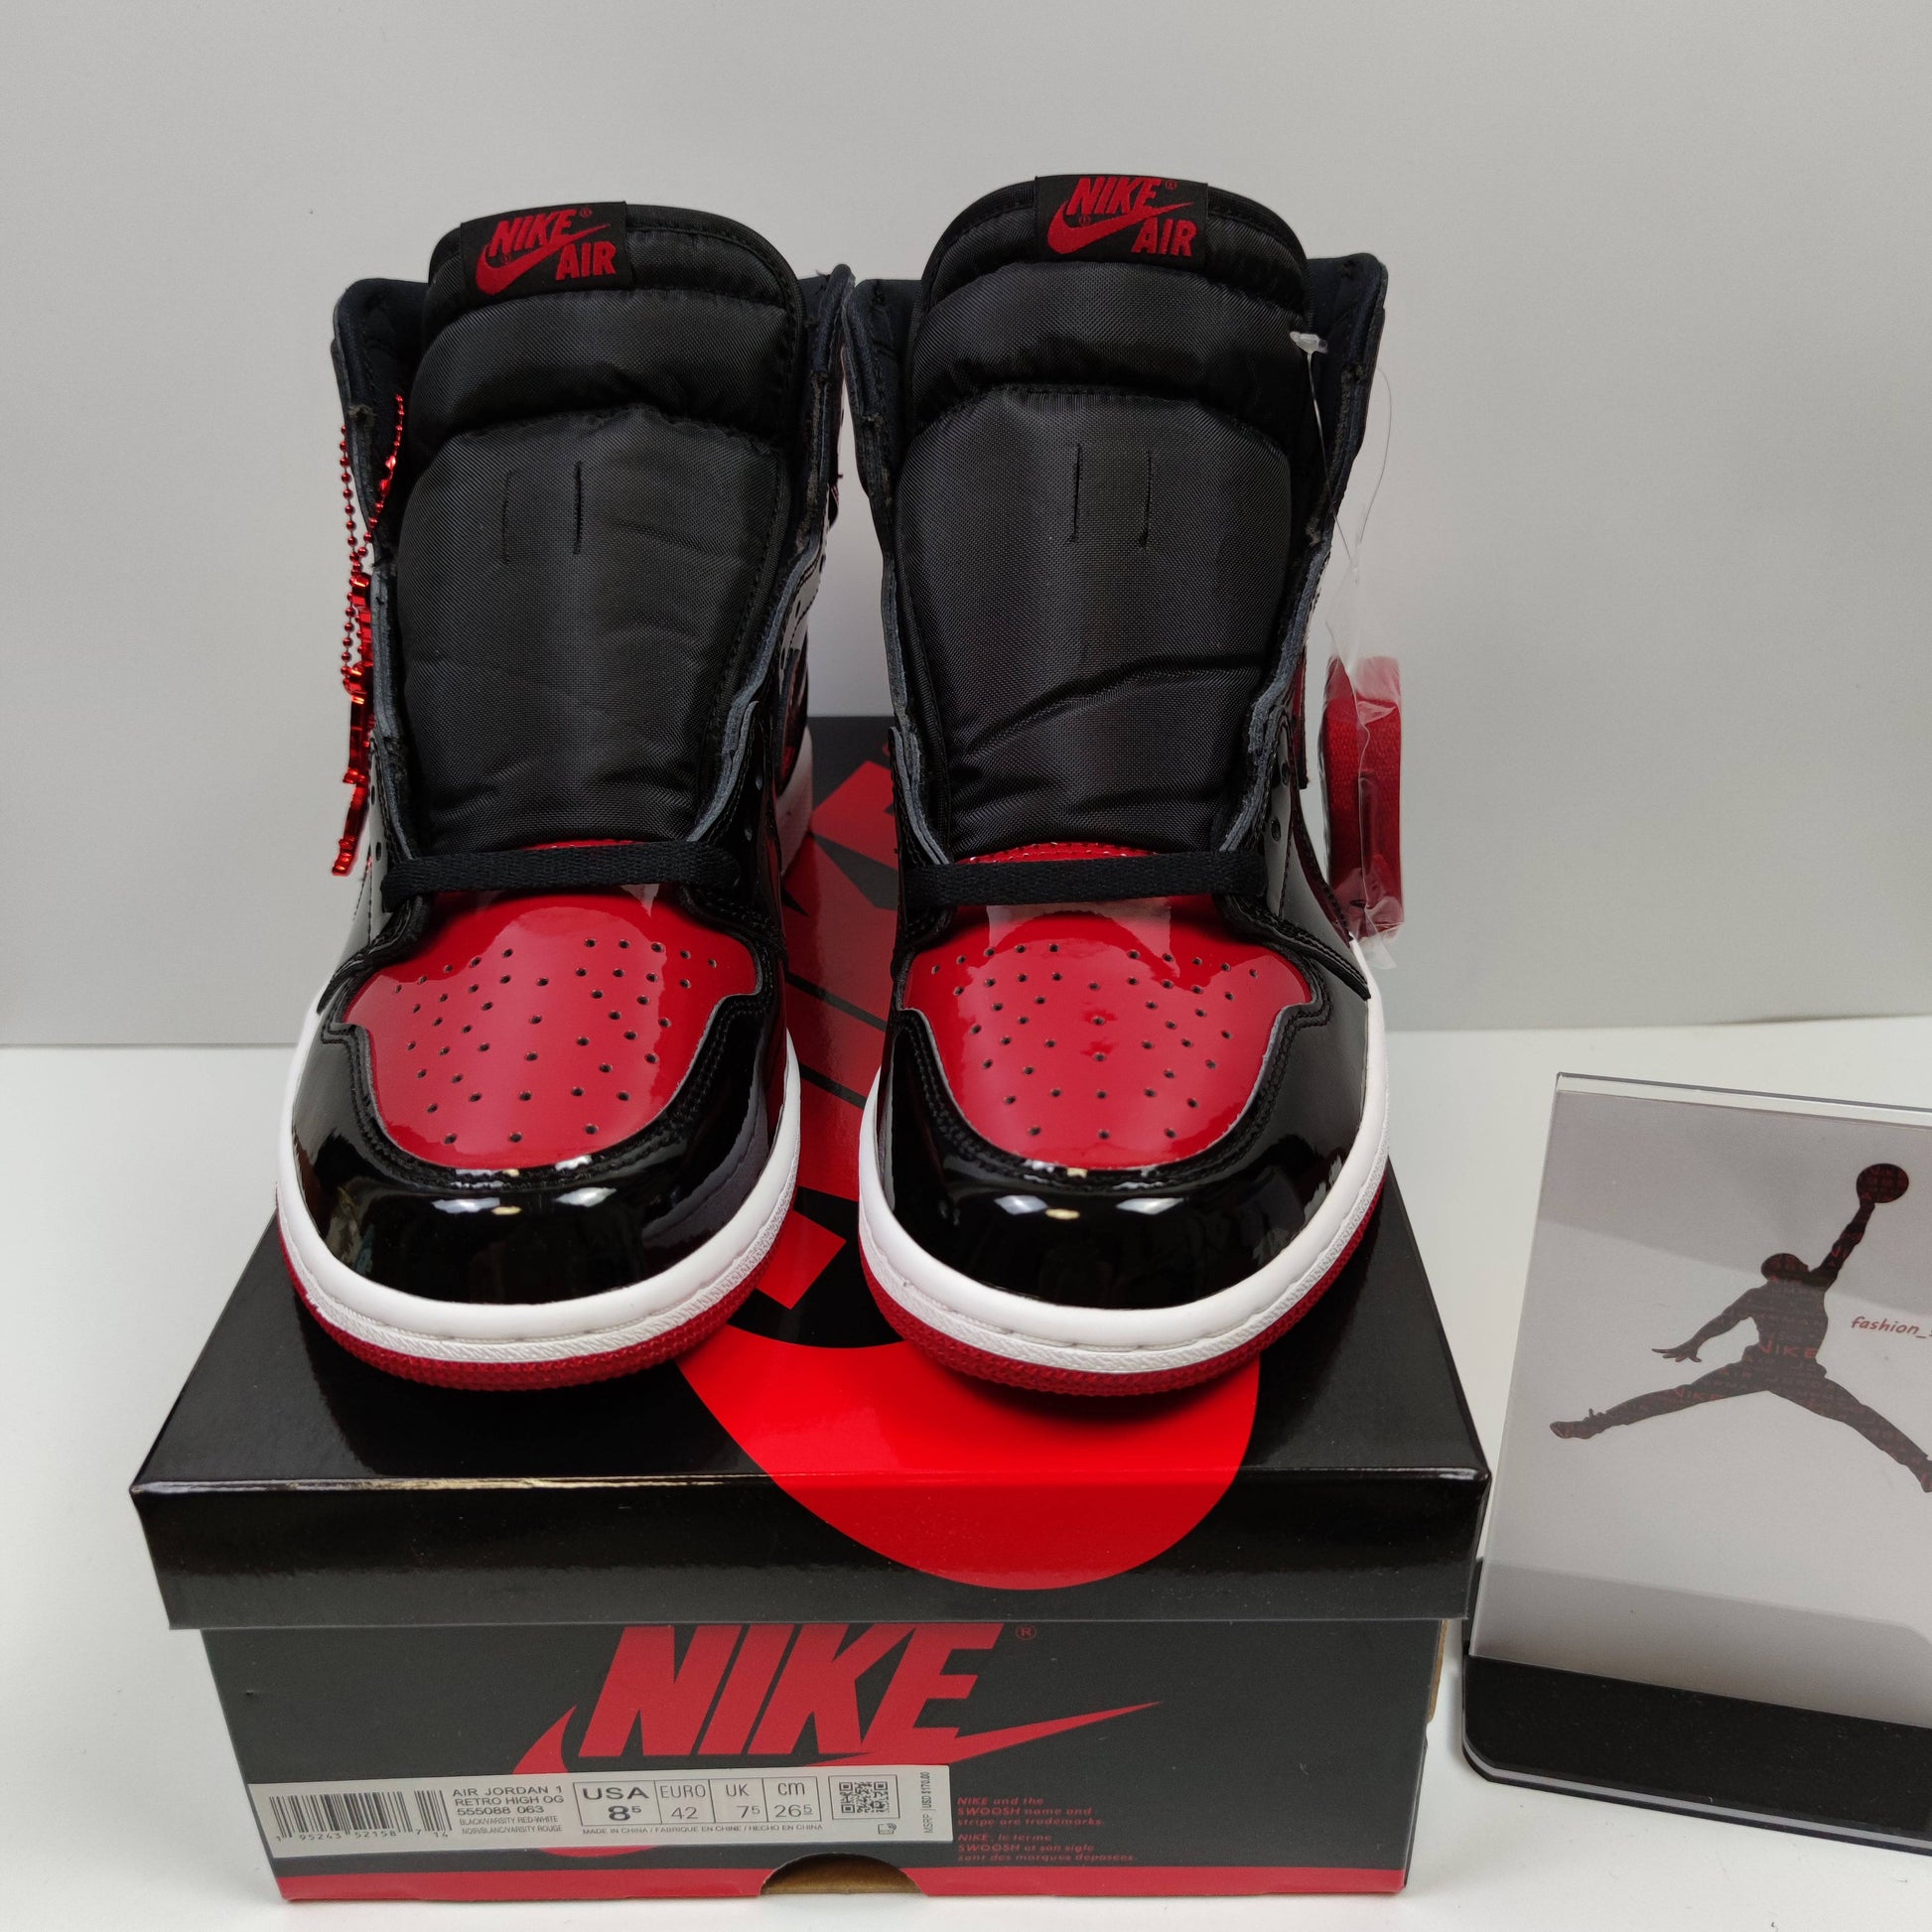 Air Jordan 1 Retro High OG Patent Bred 555088-063 $160.00